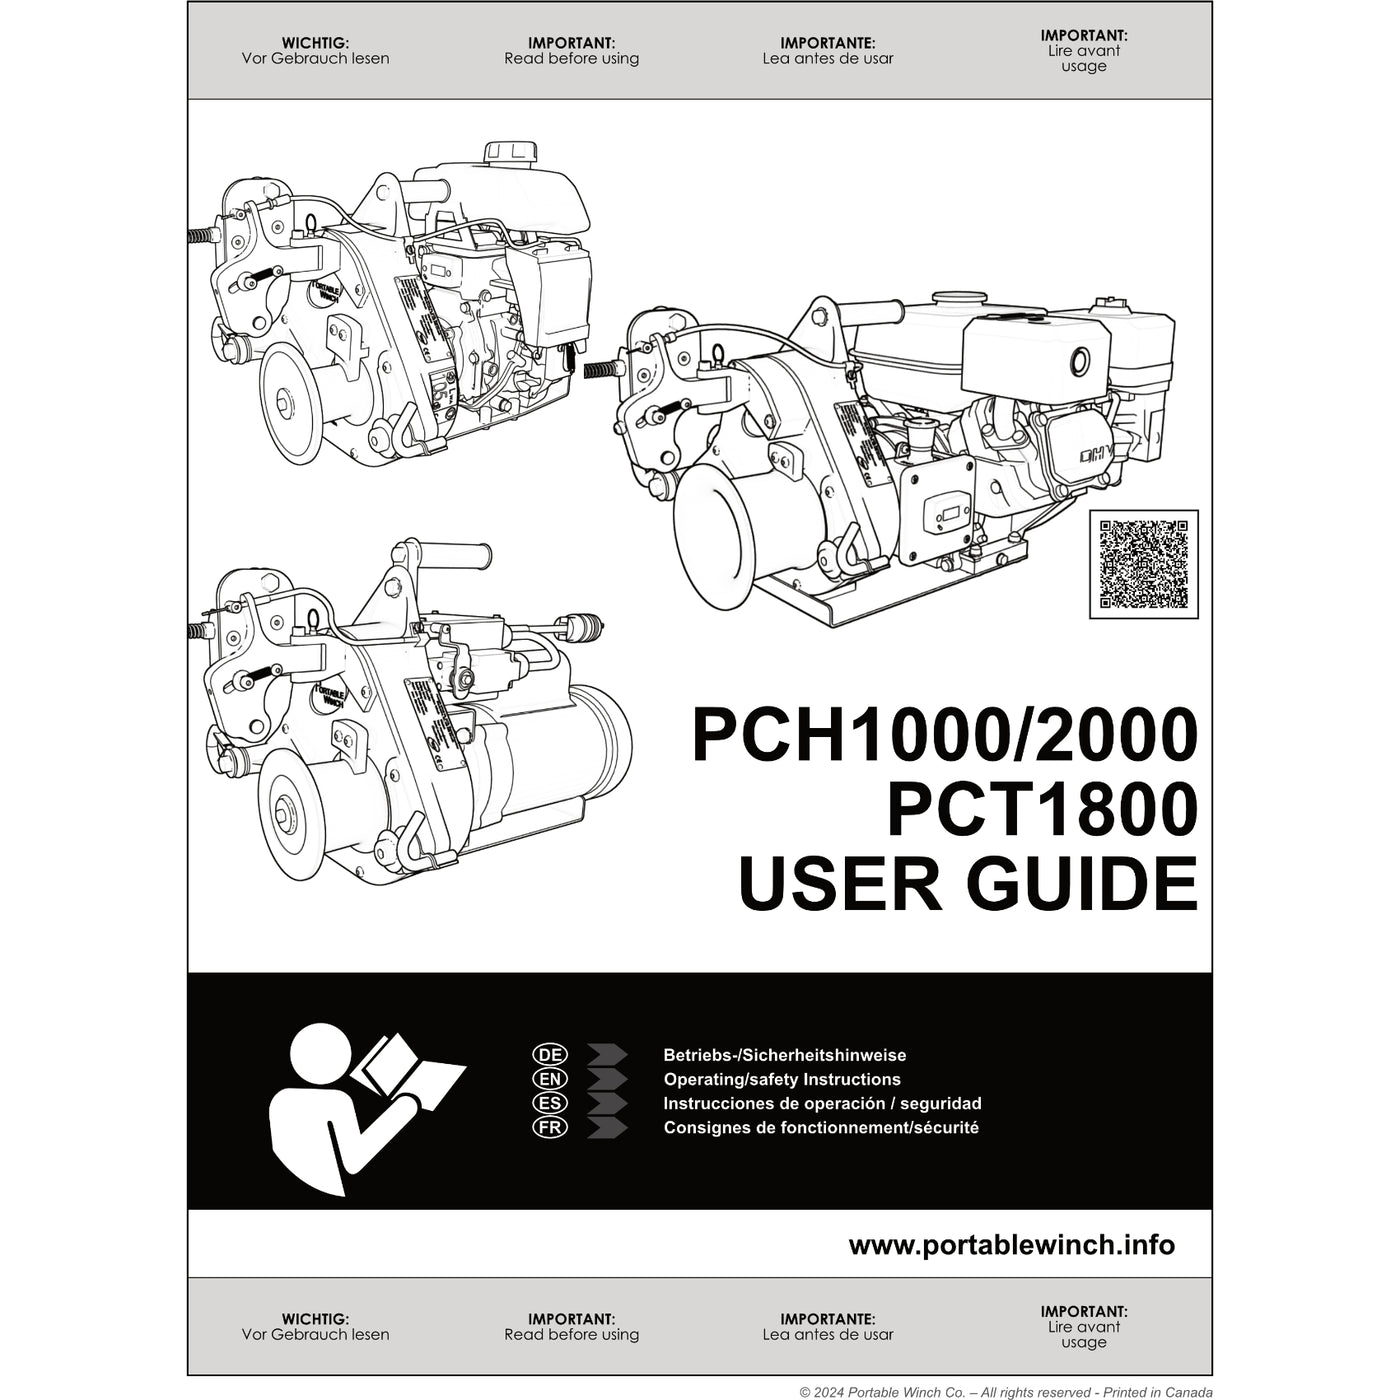 Guide de l'utilisateur pour PCH1000, PCH2000, PCT1800